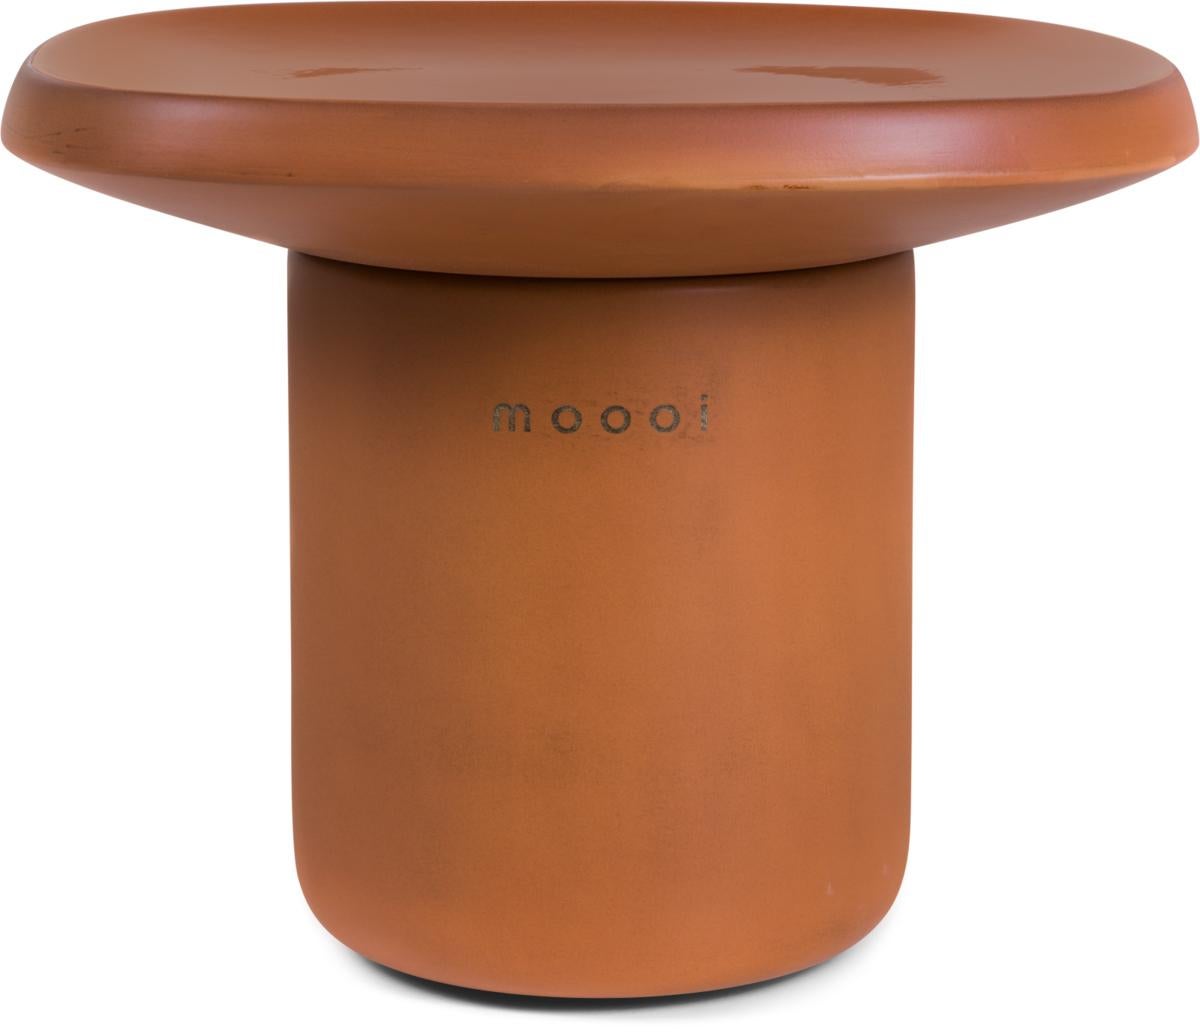 Moooi Obon Square High Ceramic Table in Terracotta Finish by Simone Bonanni For Sale 3